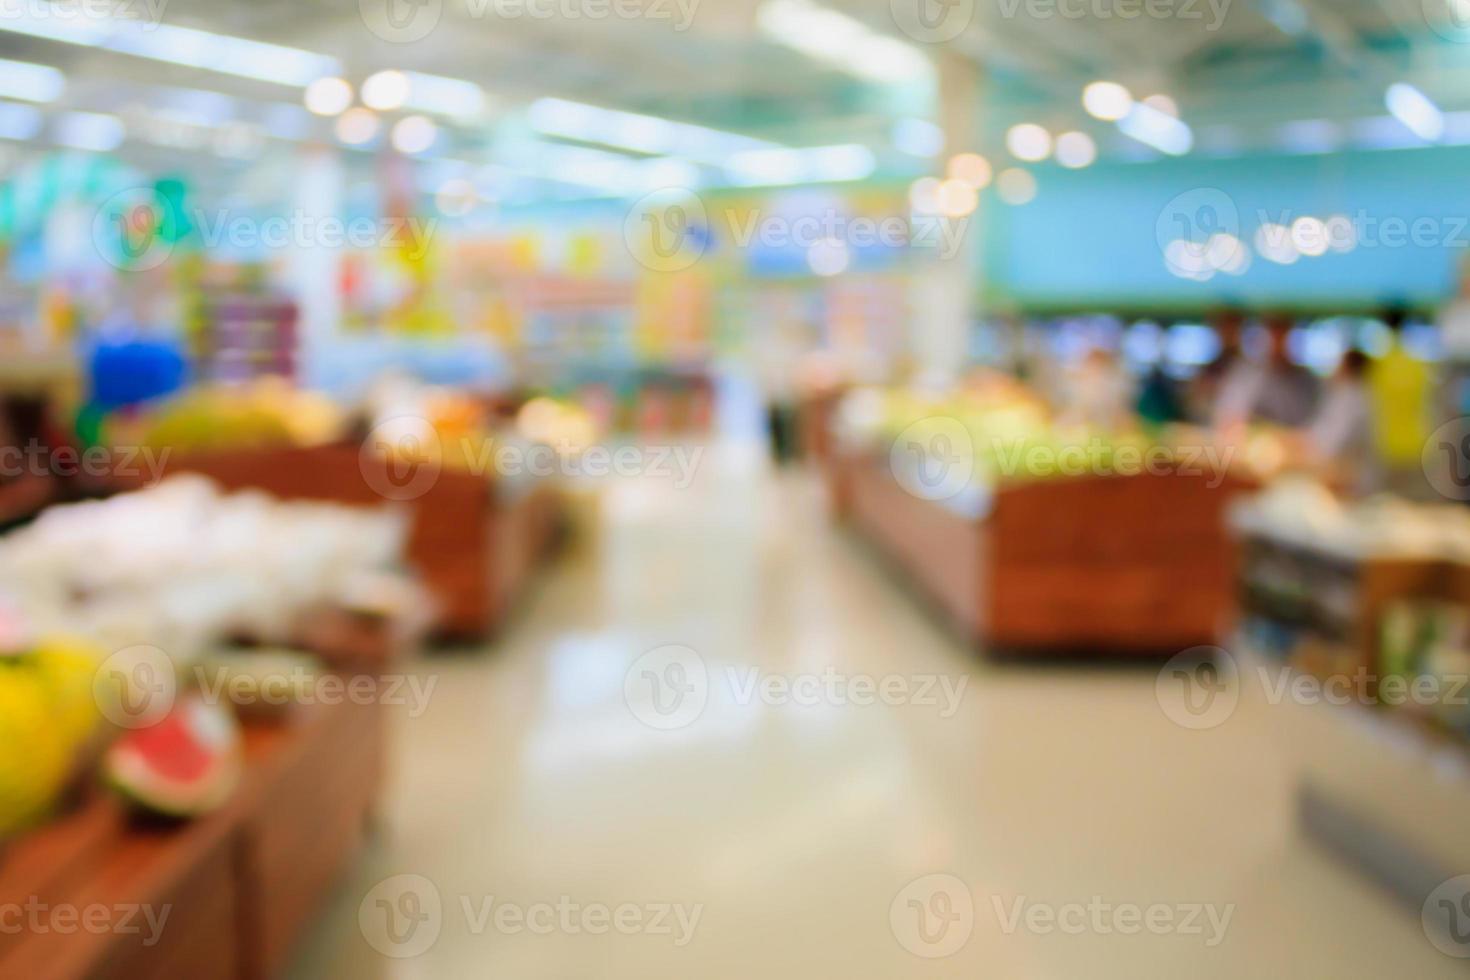 loja de supermercado desfocar o fundo com bokeh foto